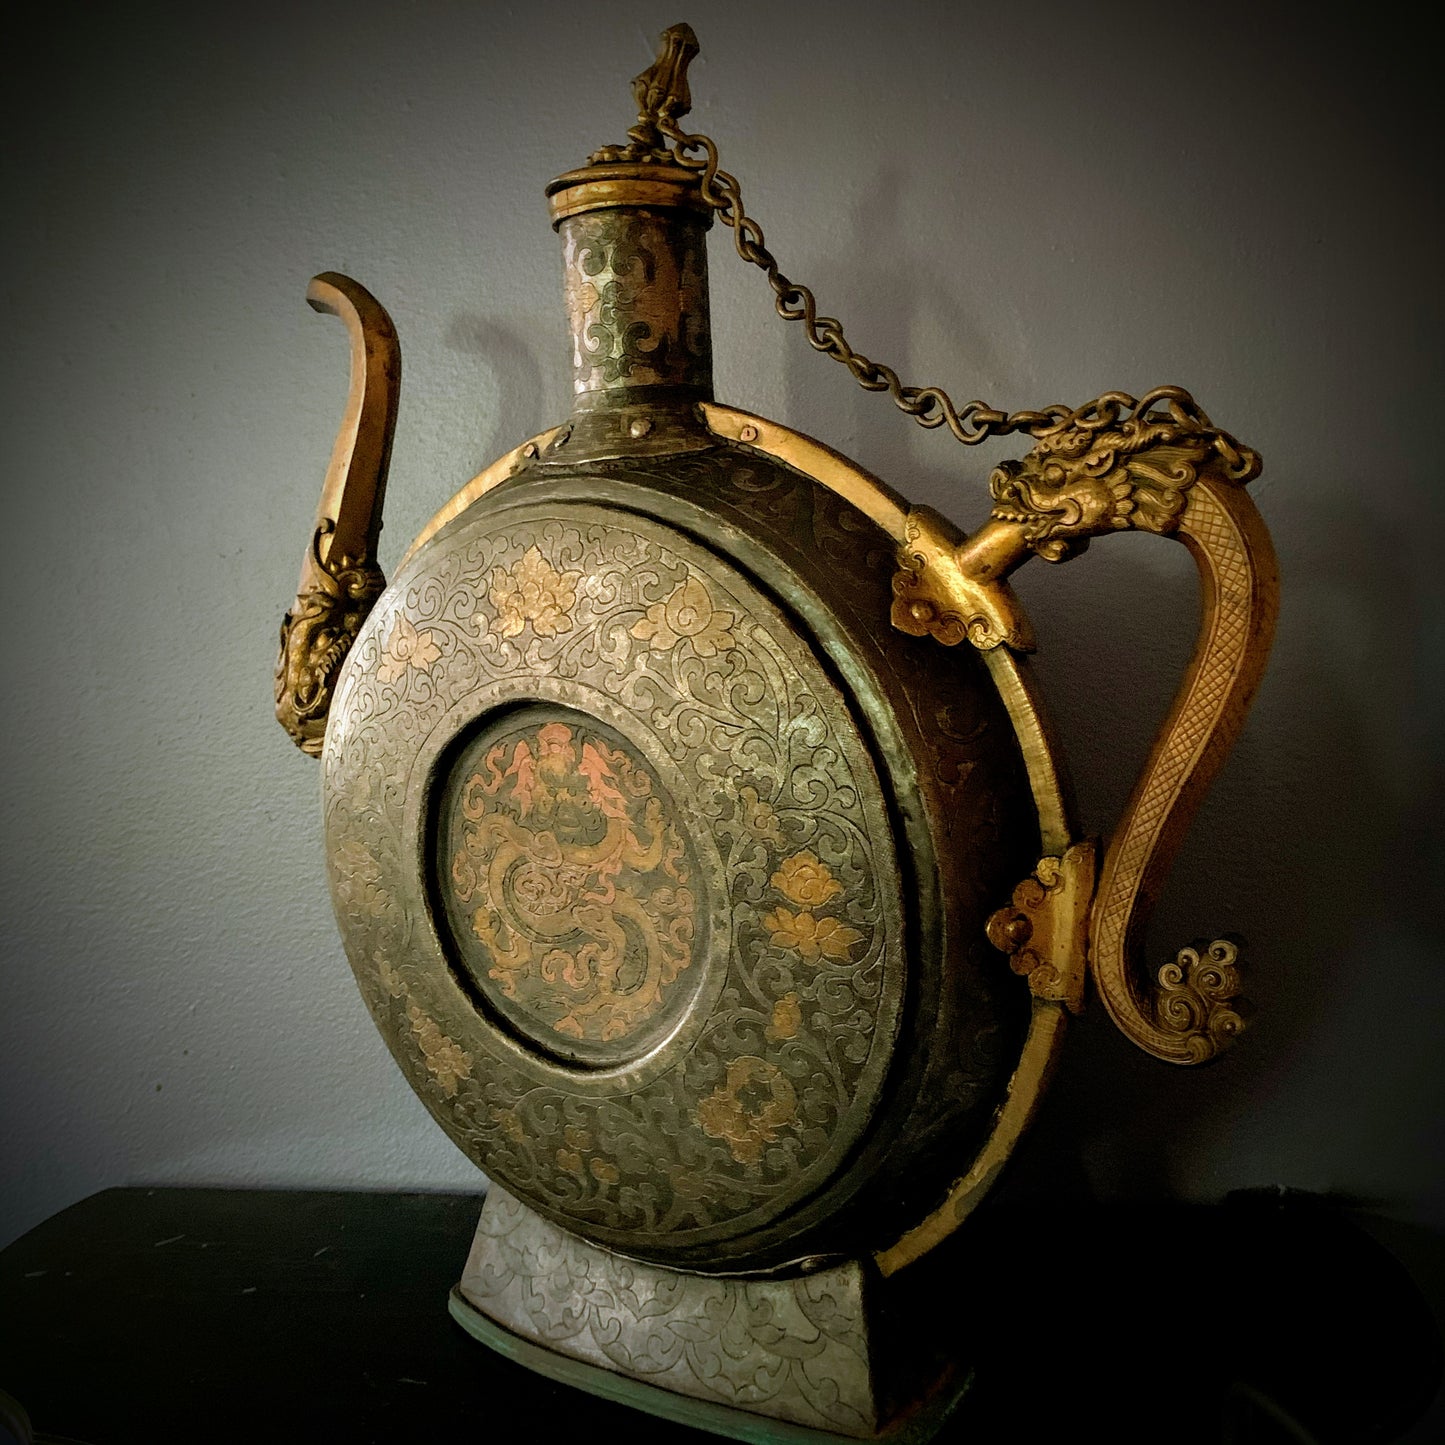 An antique Tibetan beer pitcher